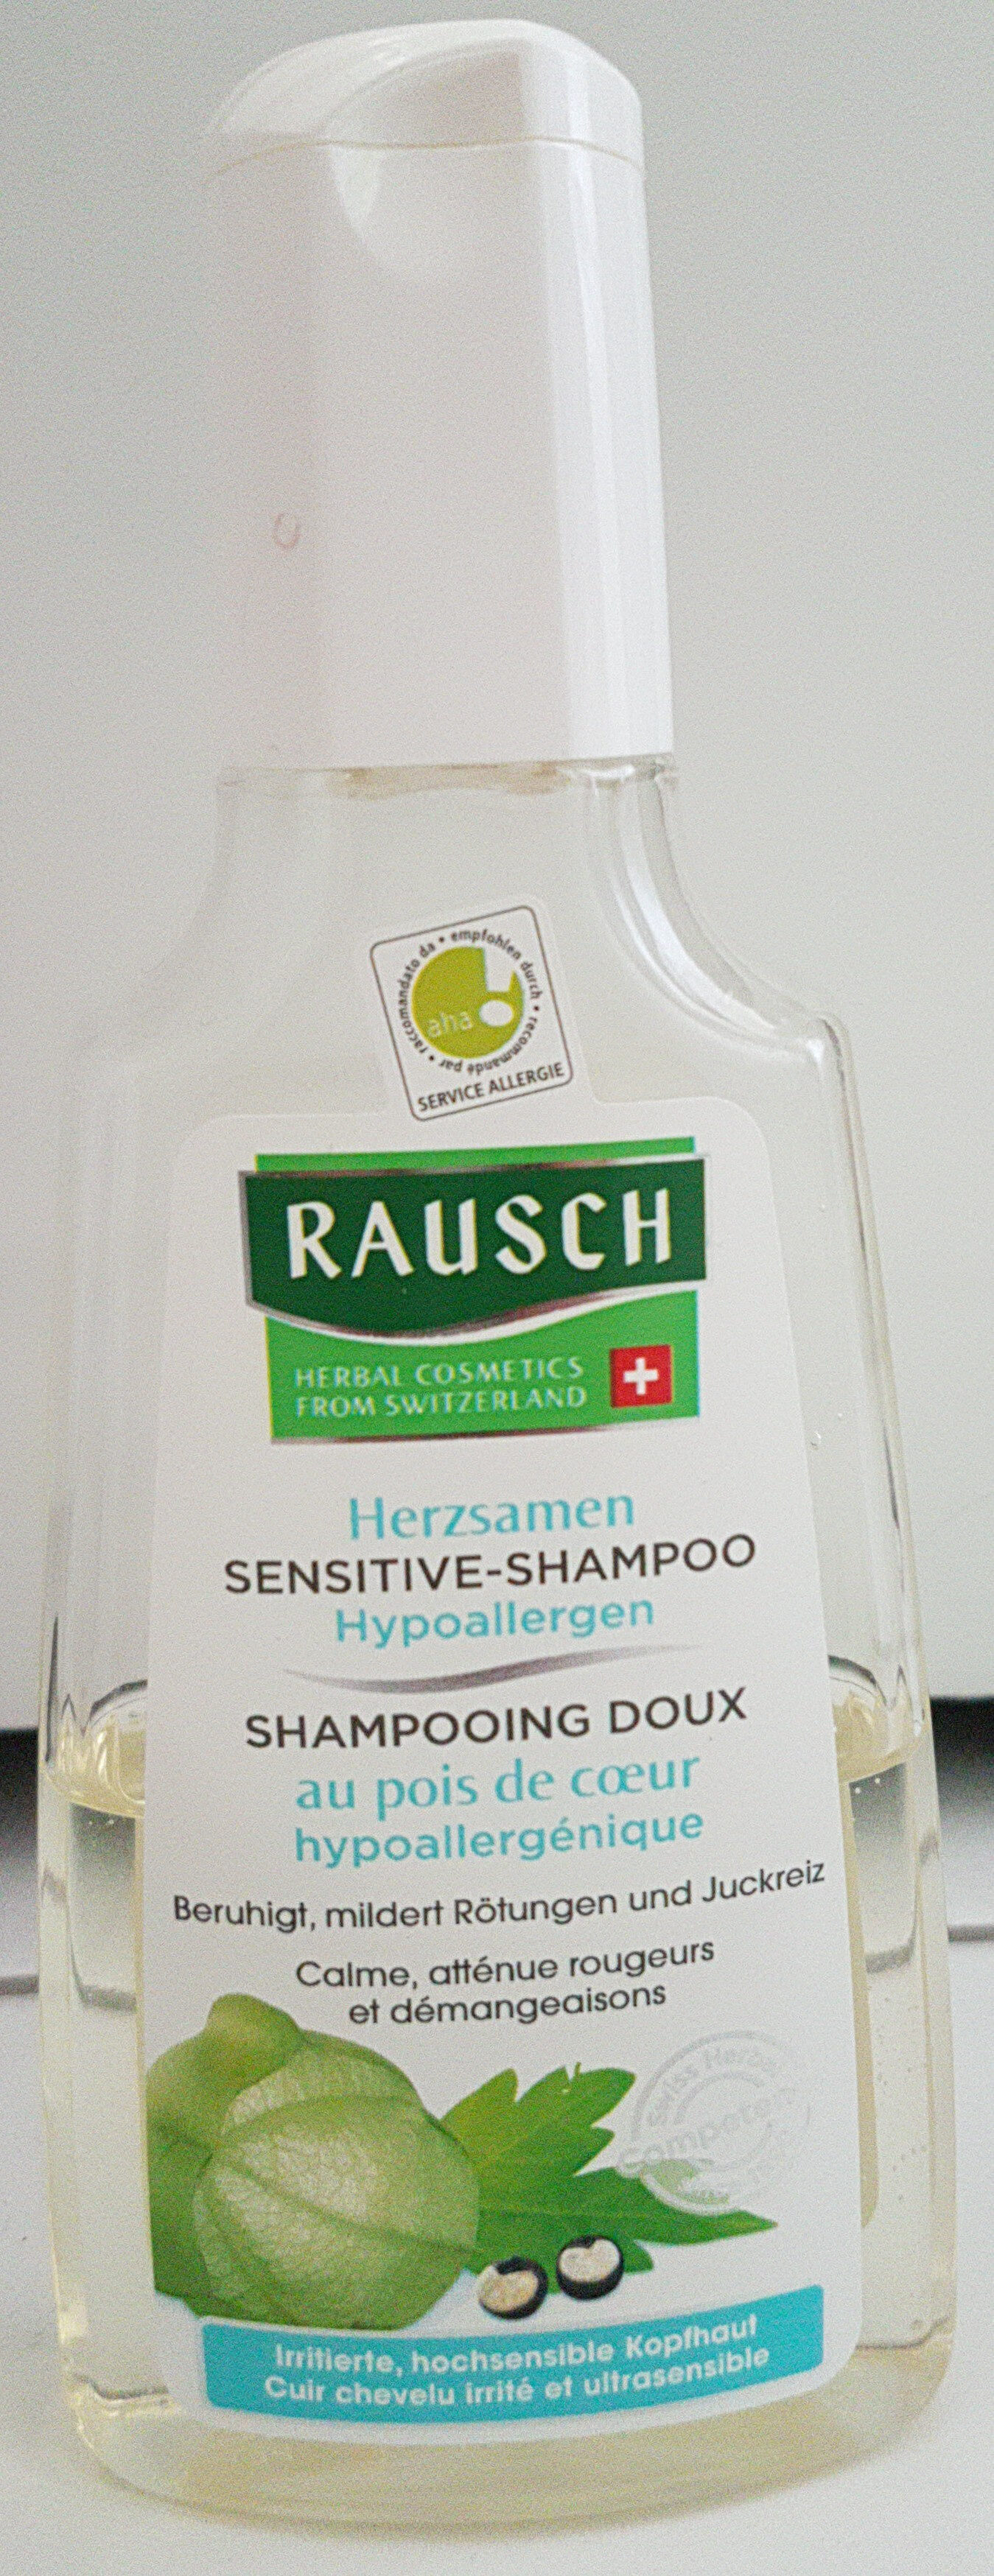 Shampooing doux - Produkt - fr